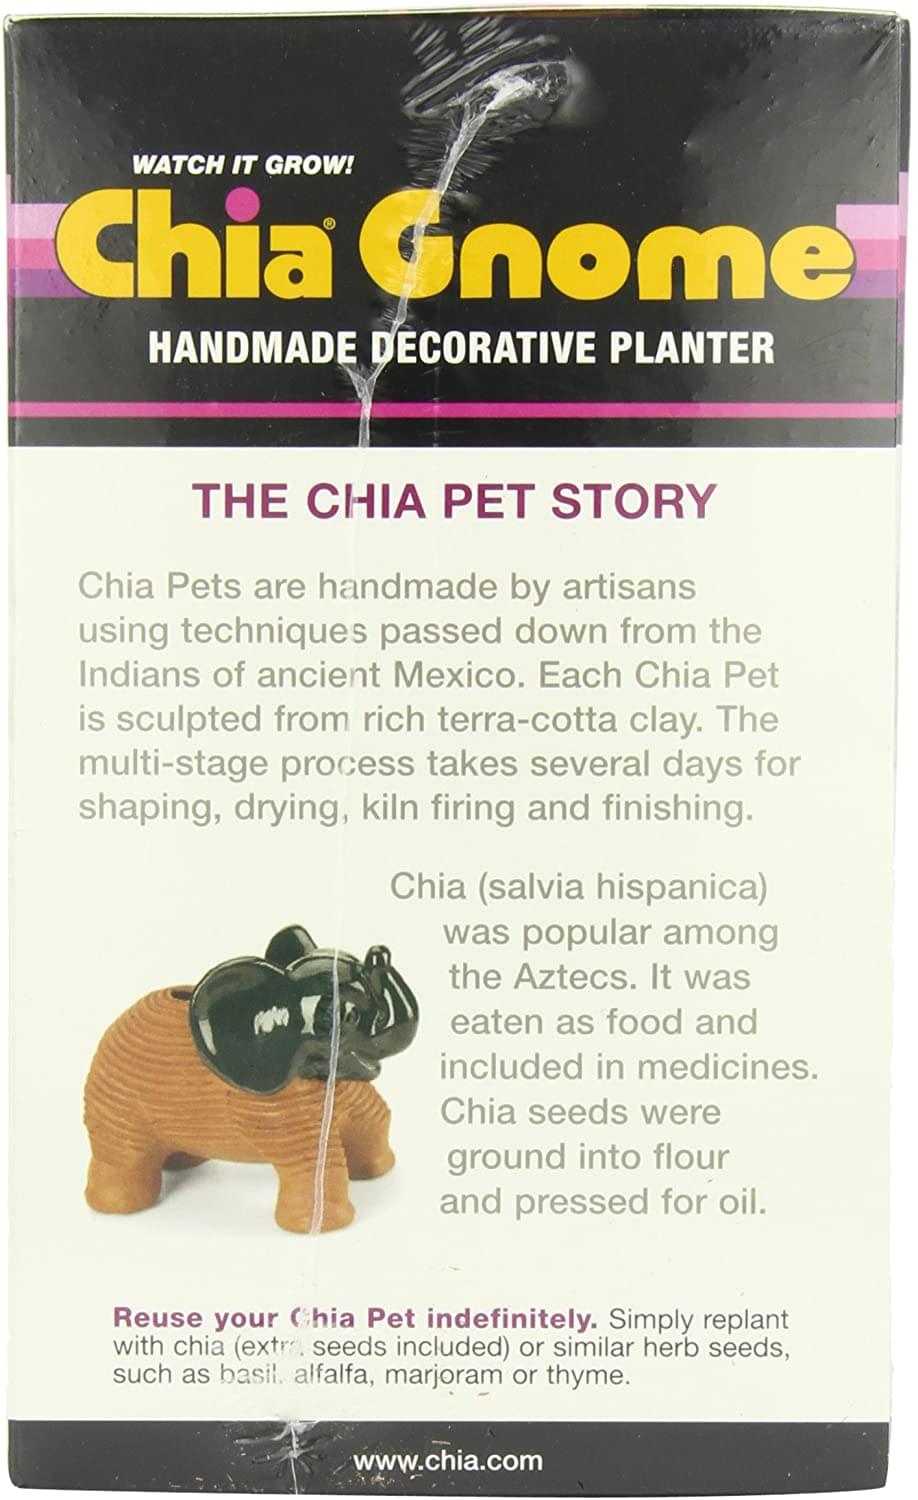 Gnome Chia Pet Decorative Planter